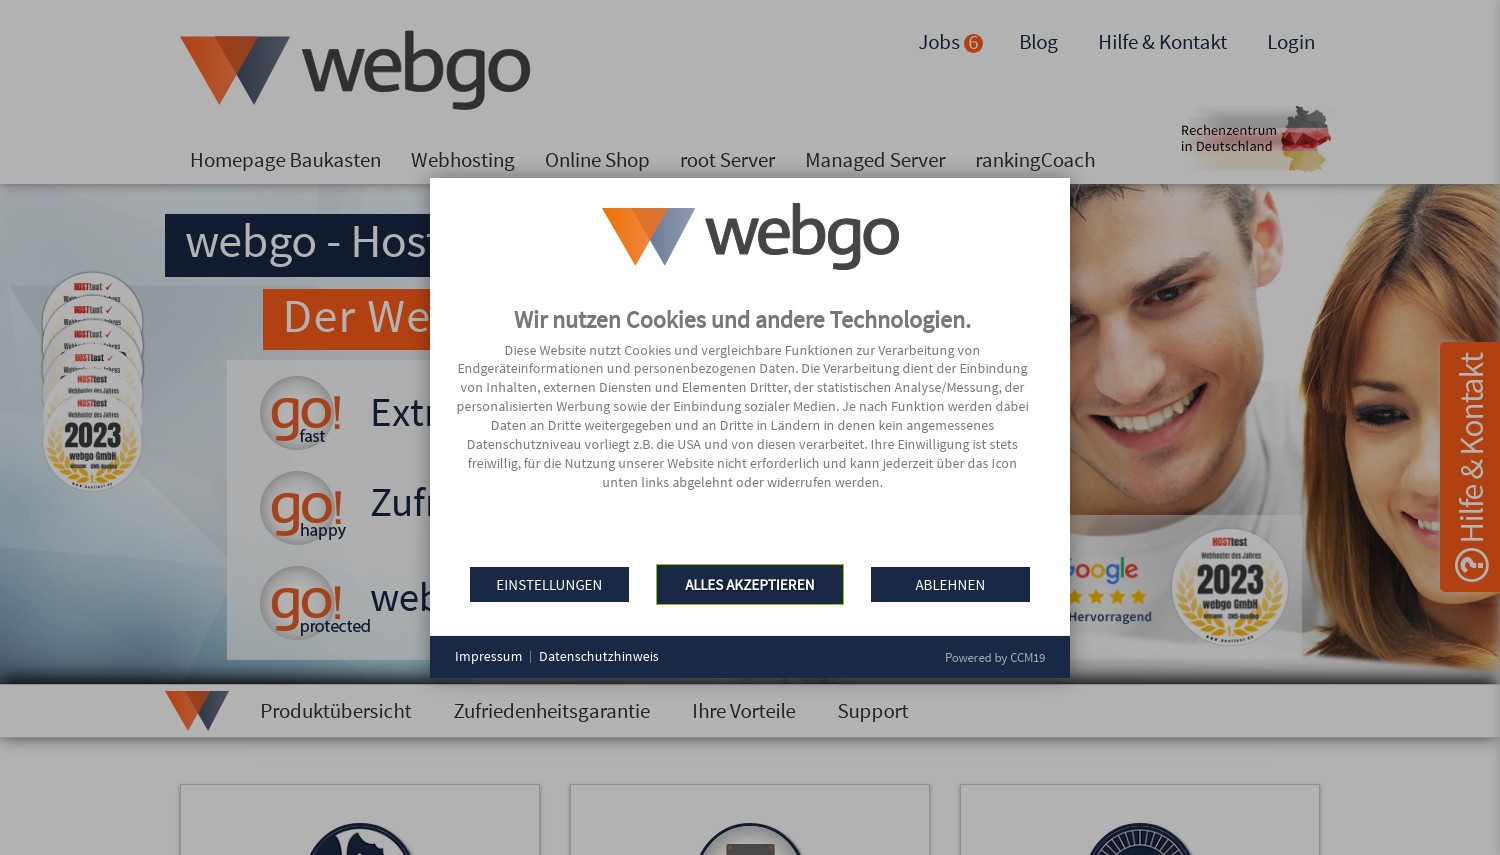 Instantánea del sitio web WebGo